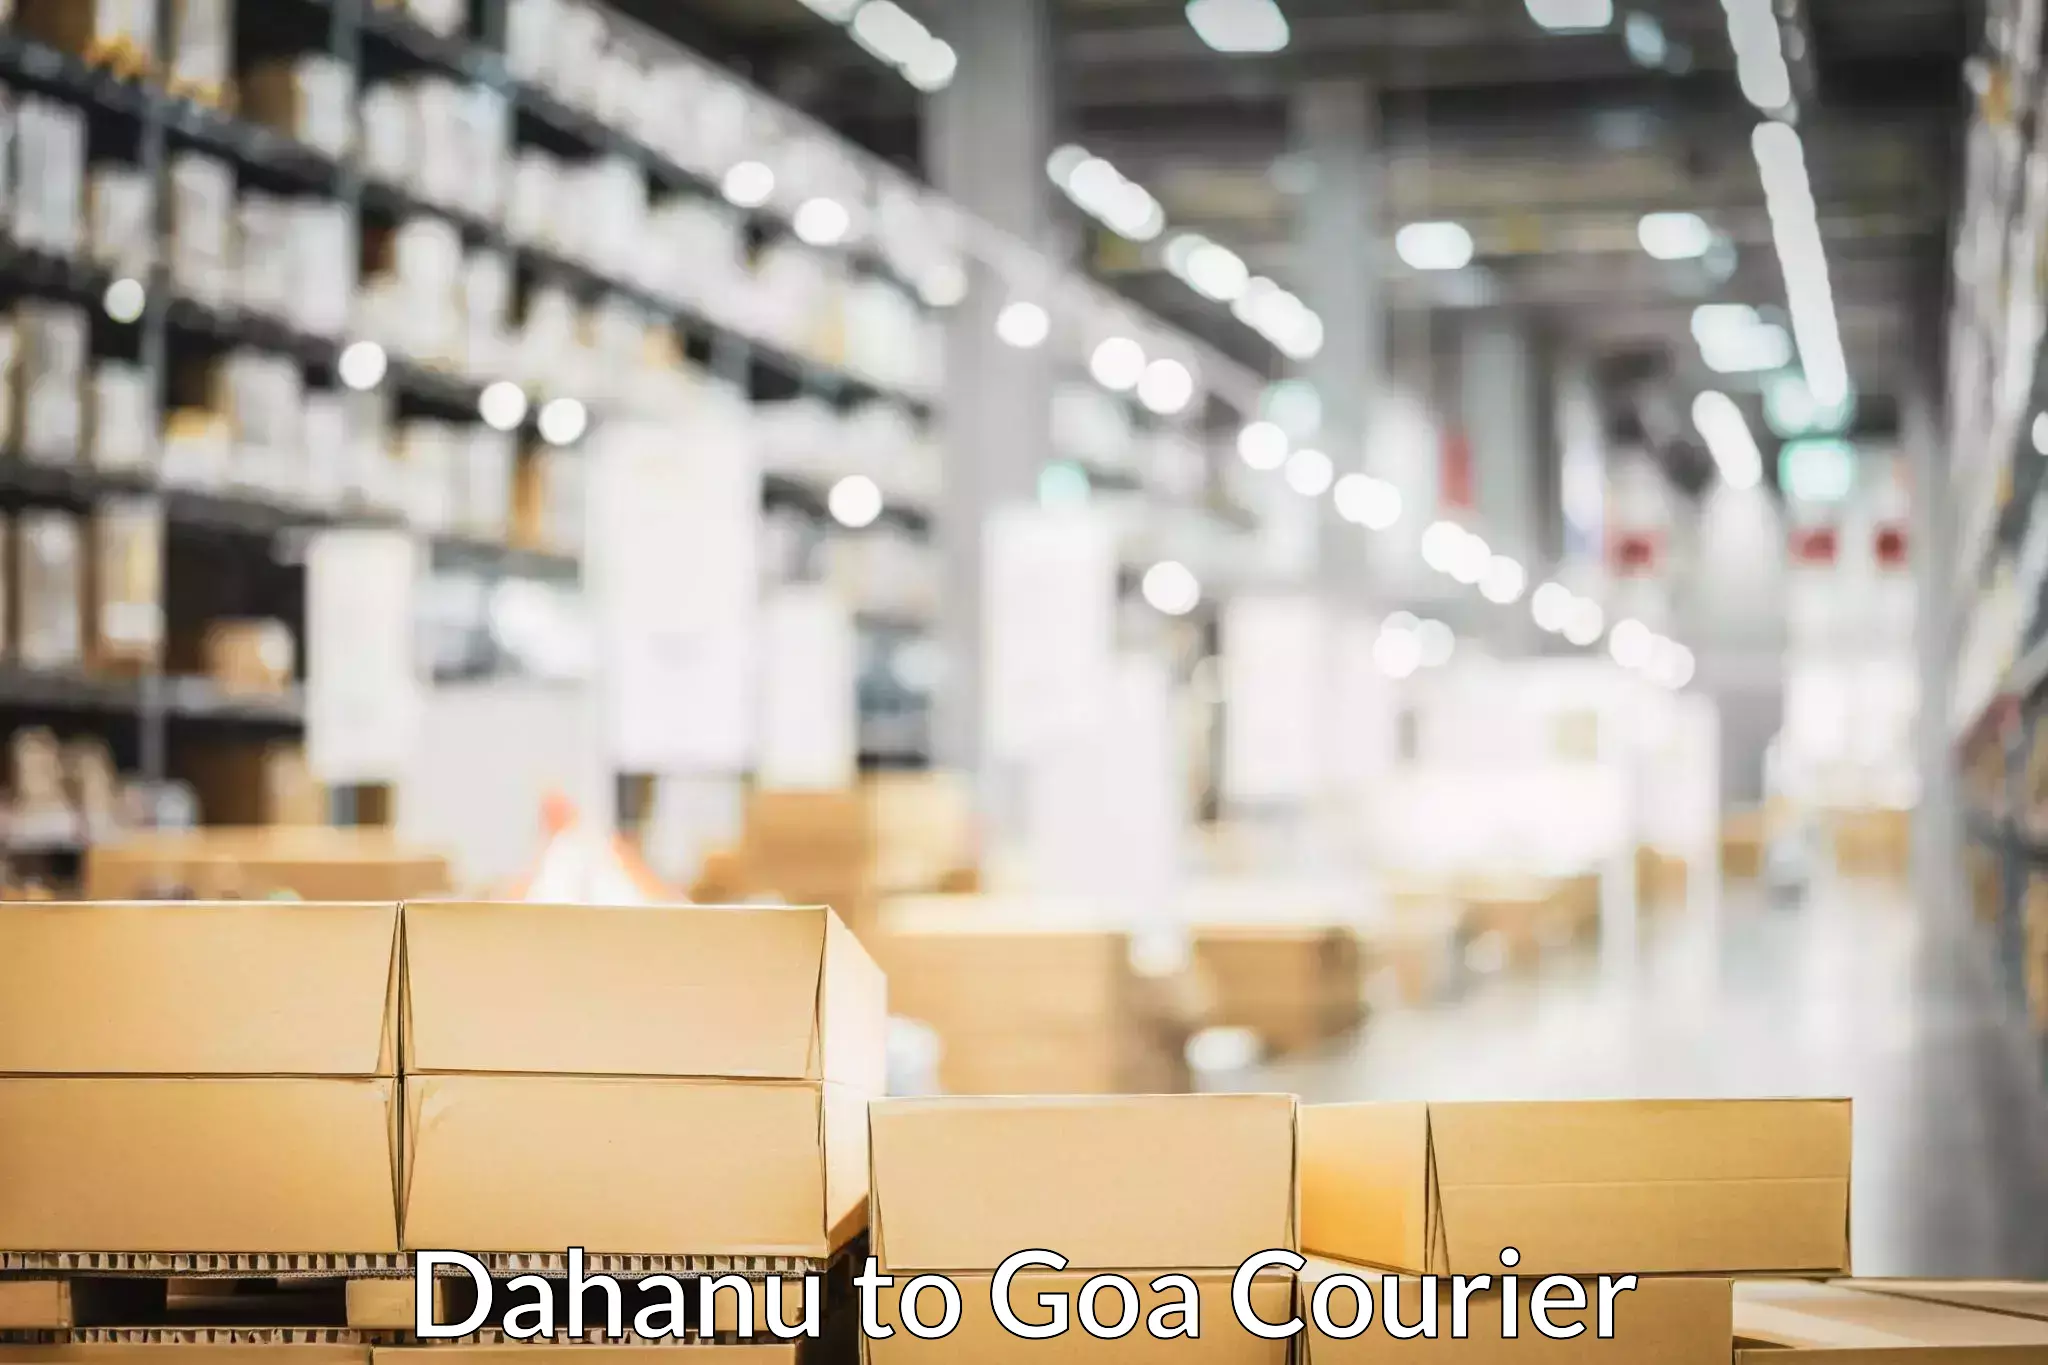 High-quality moving services Dahanu to Vasco da Gama